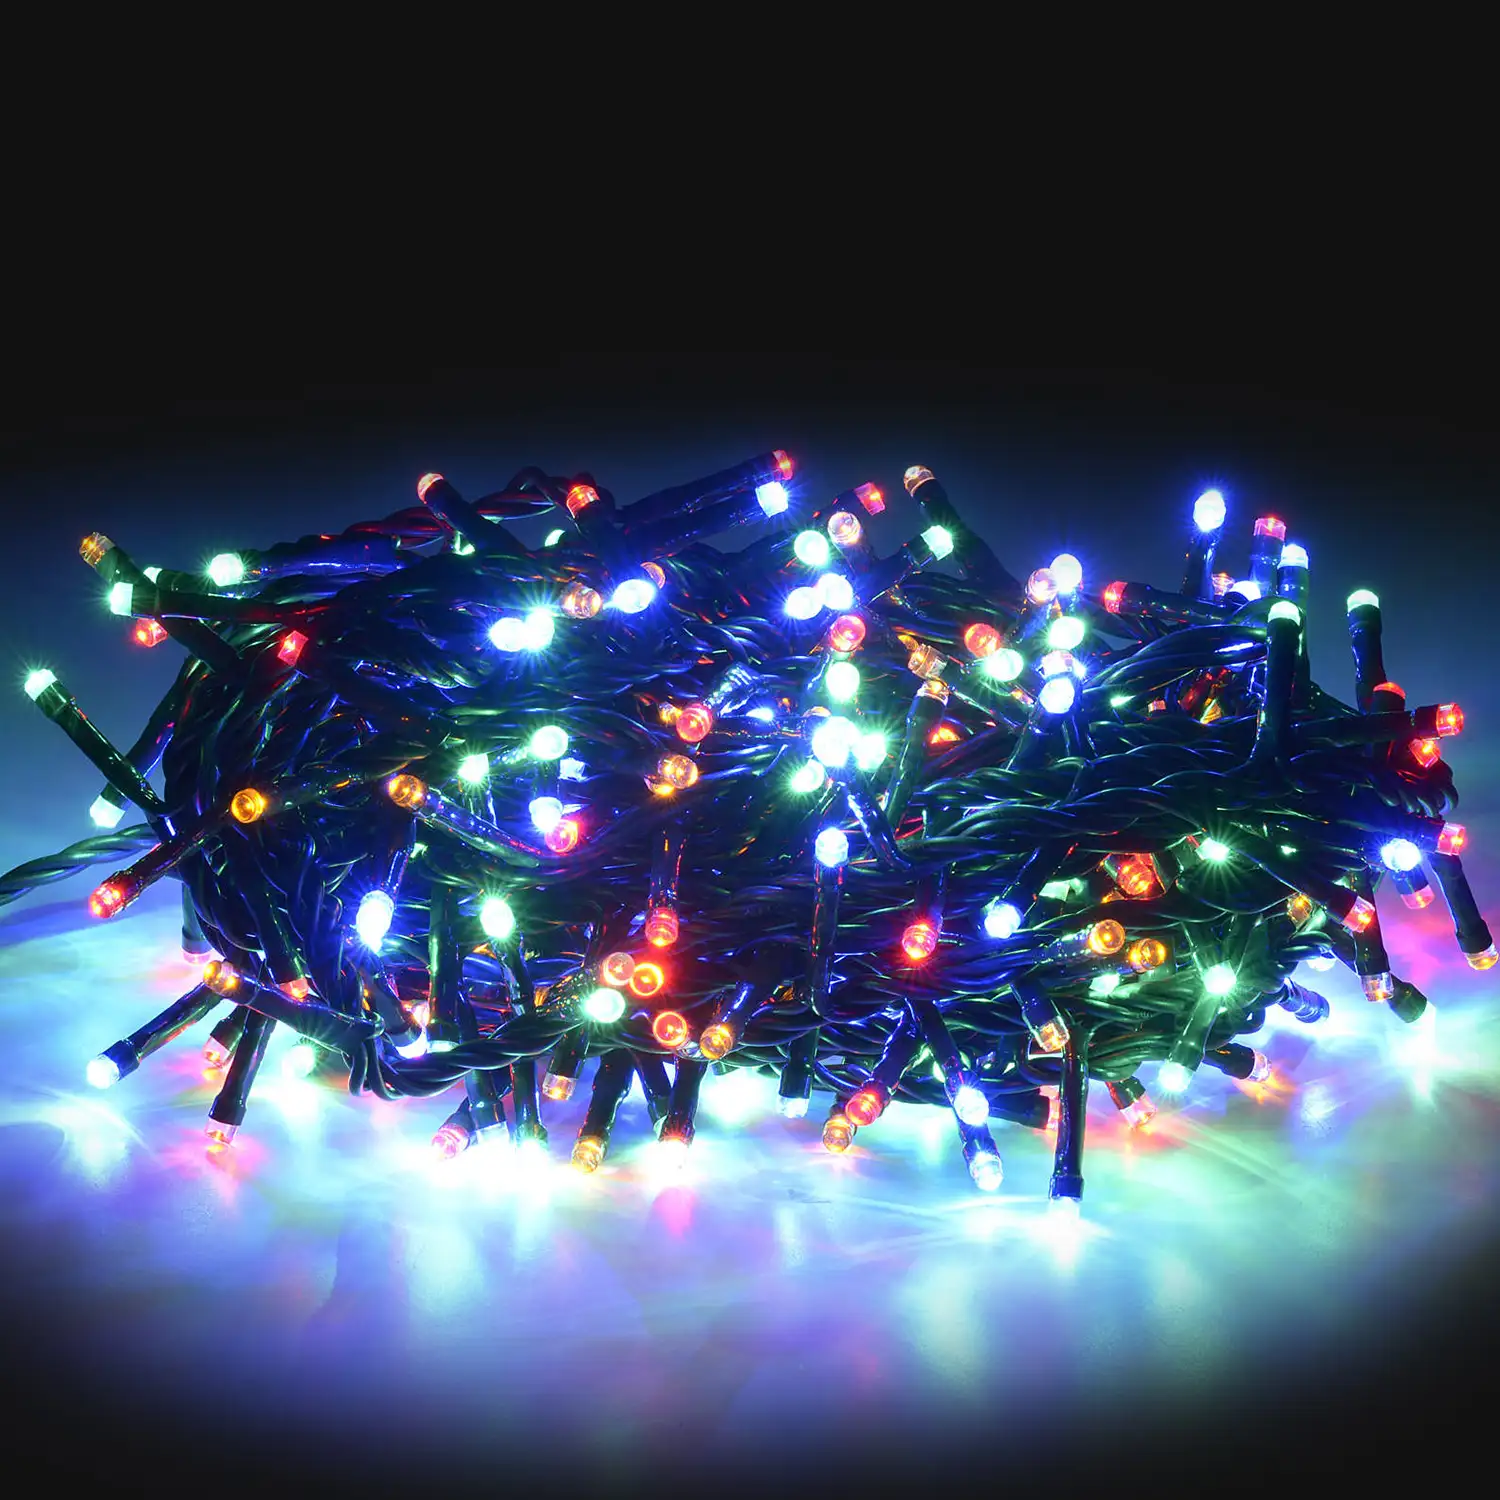 140 bombillas de luces LED multicolor 11,2 metros.